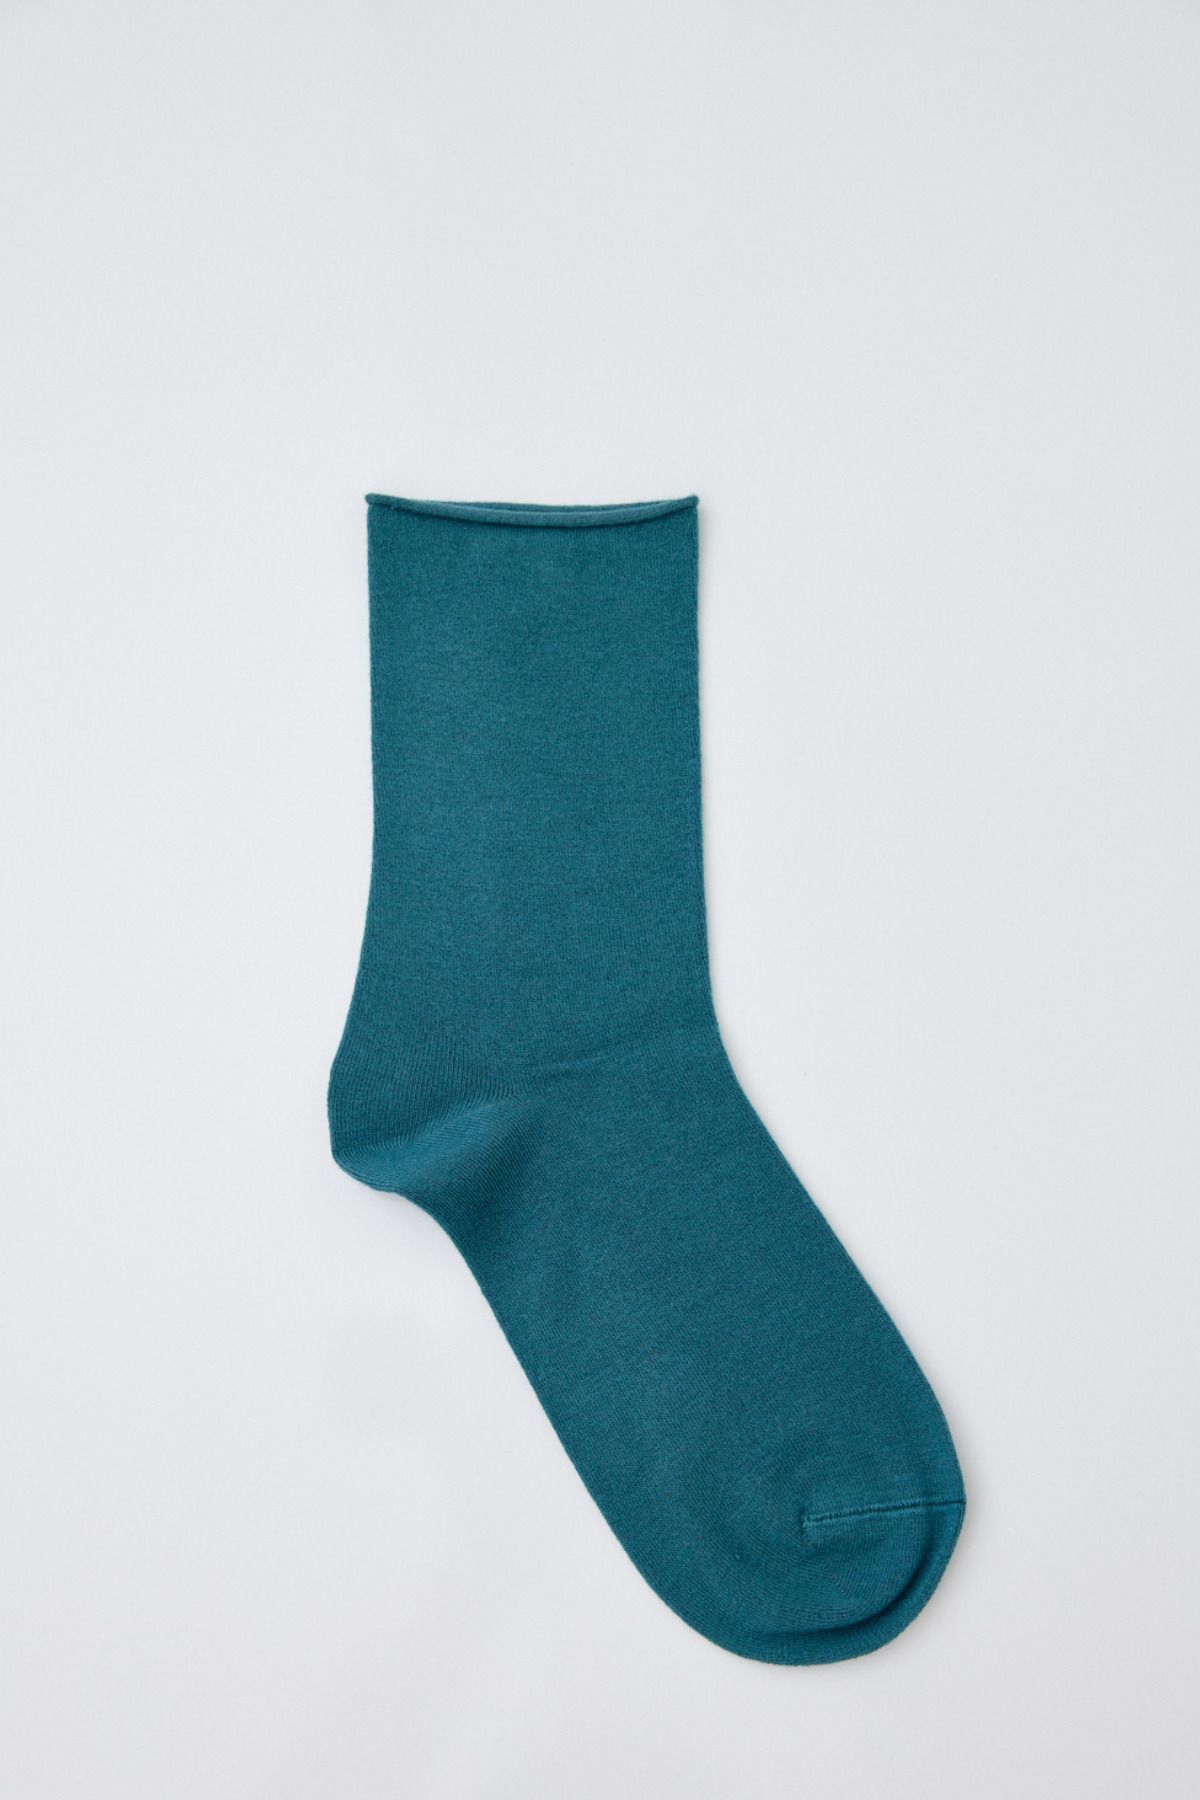 Katia & Bony Kadın Basic Modal Soket Çorap Yeşil